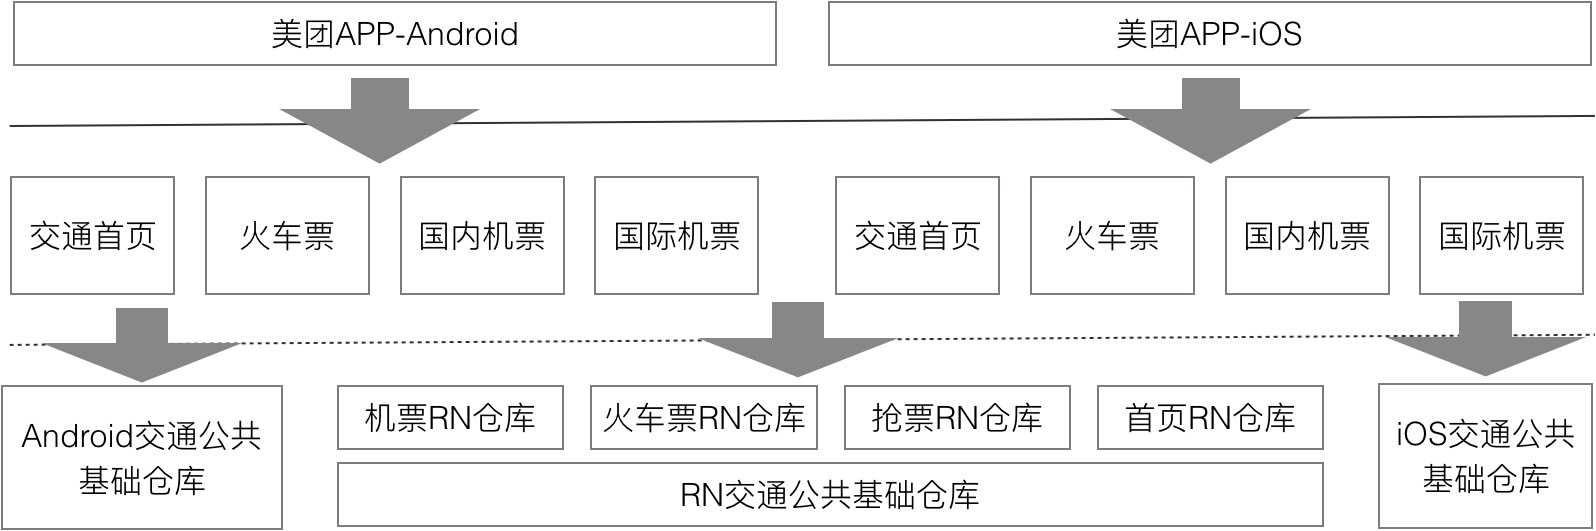 MRN工程结构图